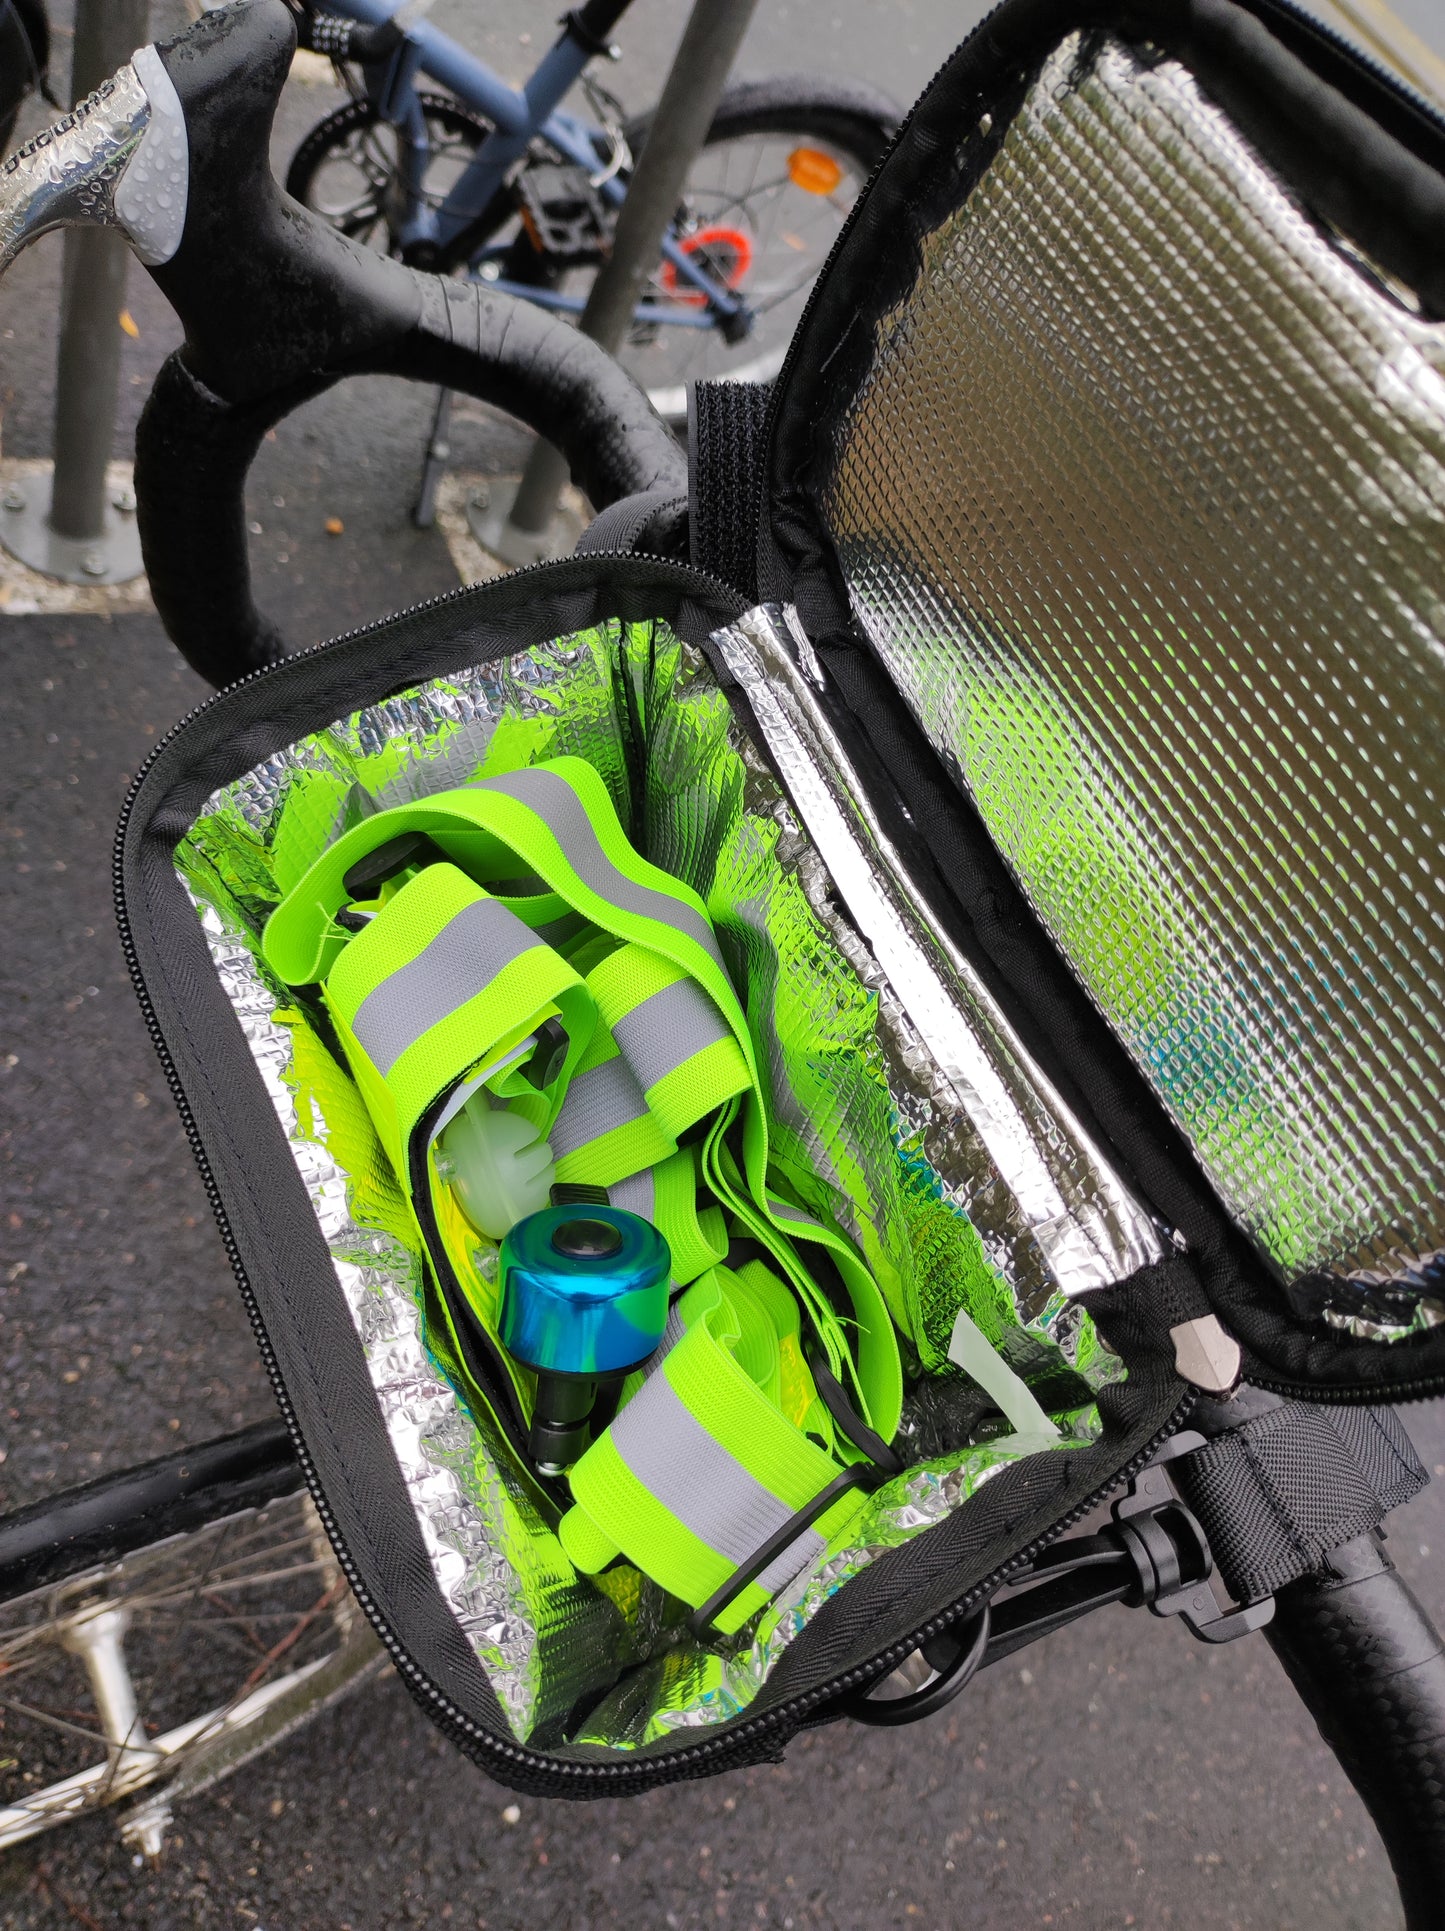 Panier sacoche de guidon vélo étanche avec support téléphone: l'accessoire indispensable pour votre voyage